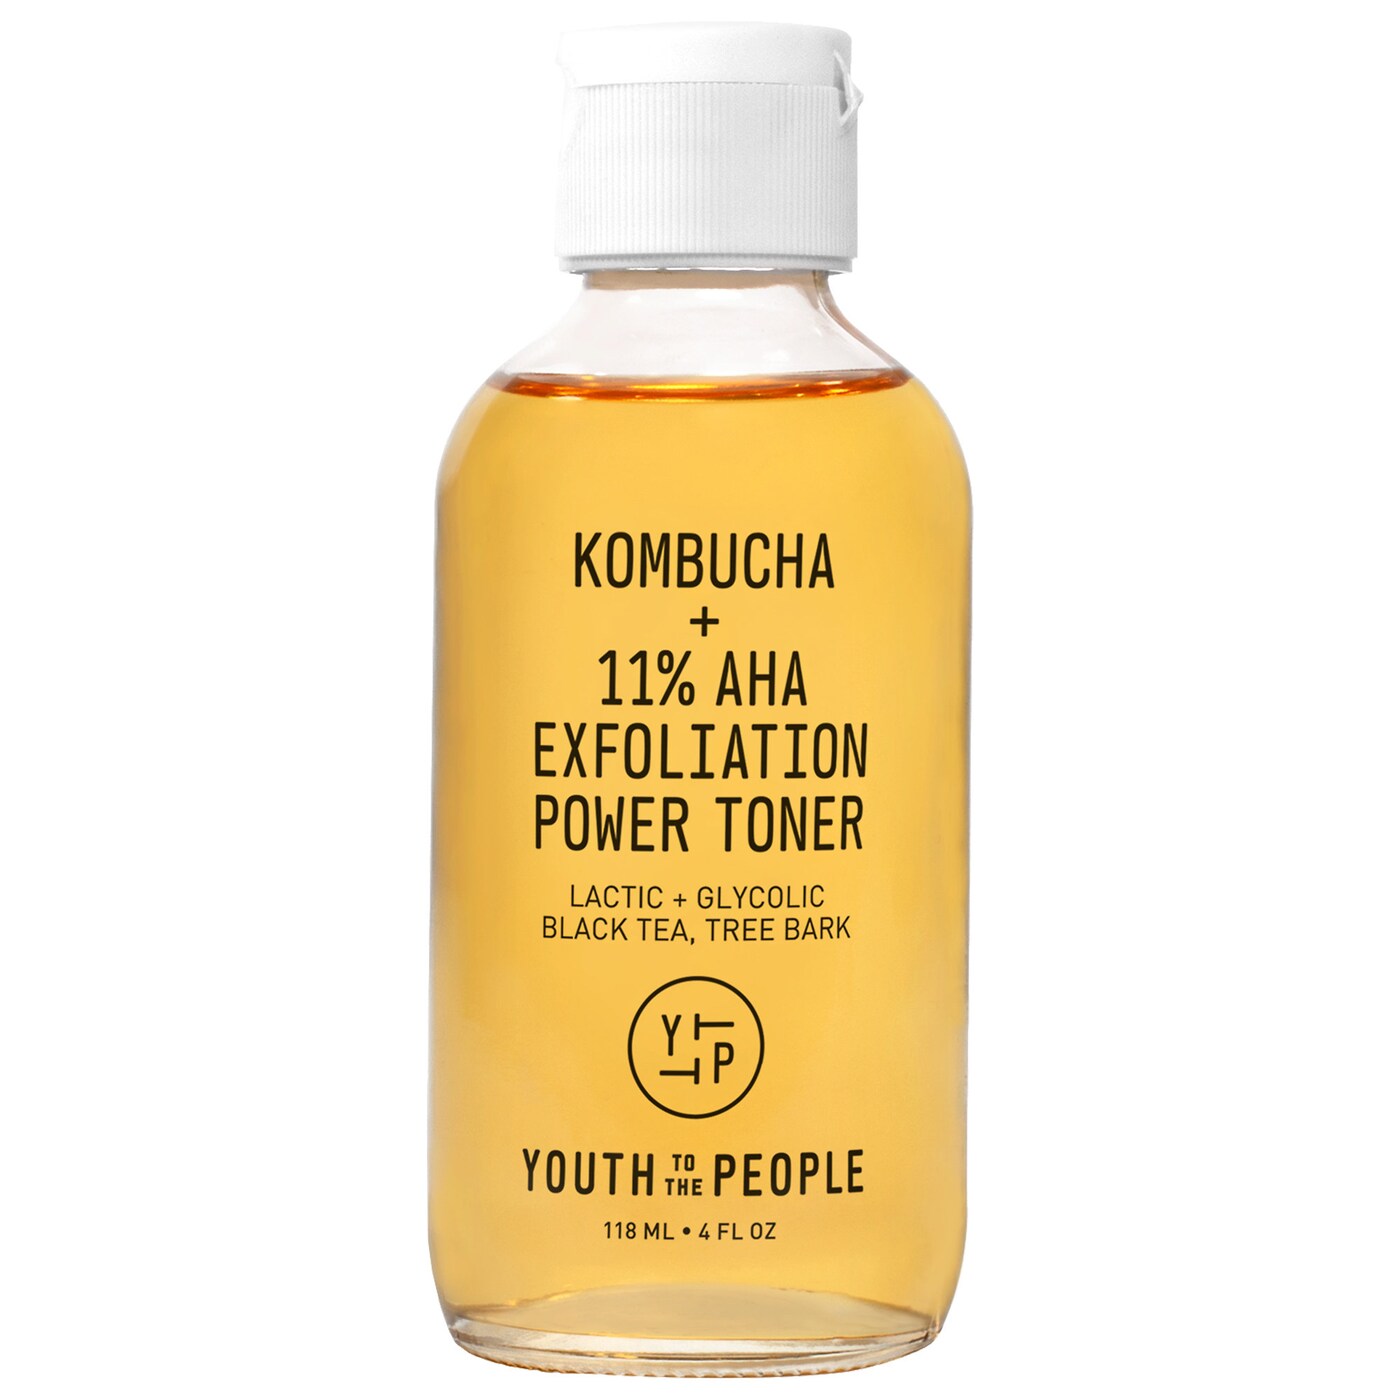 Kombutcha + 11% AHA Exfoliation Power Toner